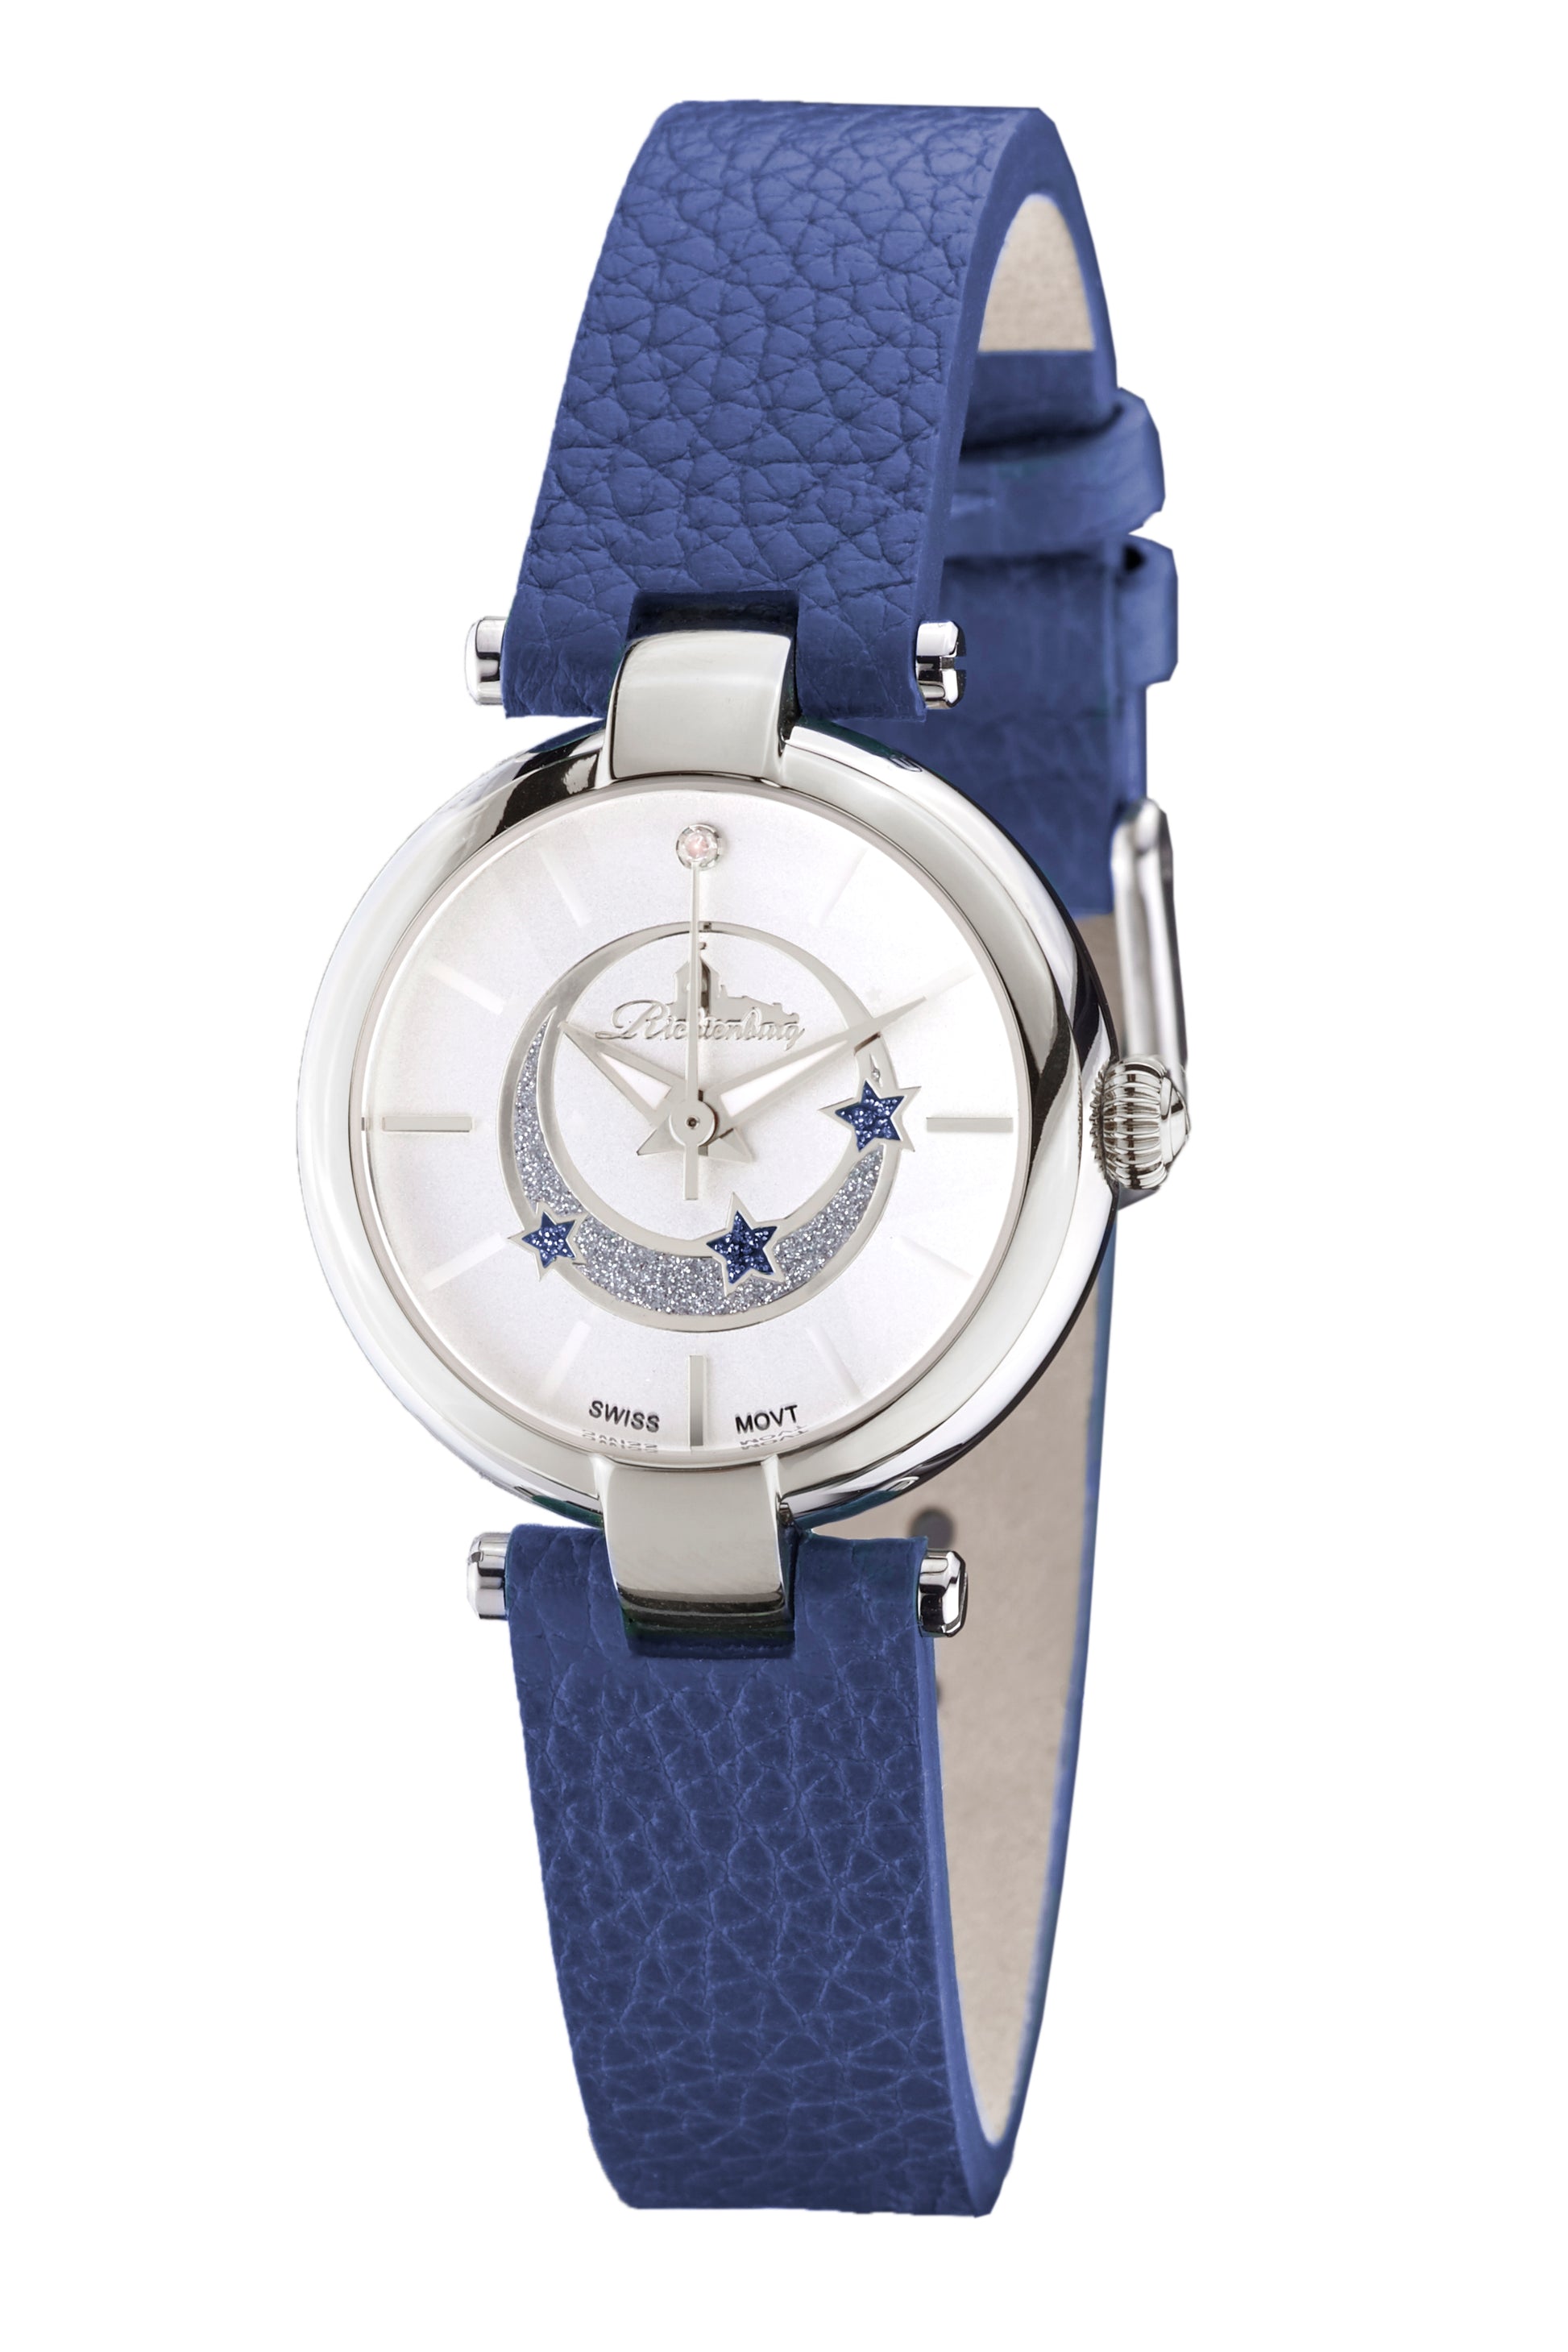 Automatic watches — Vivana — Richtenburg — steel silver blue